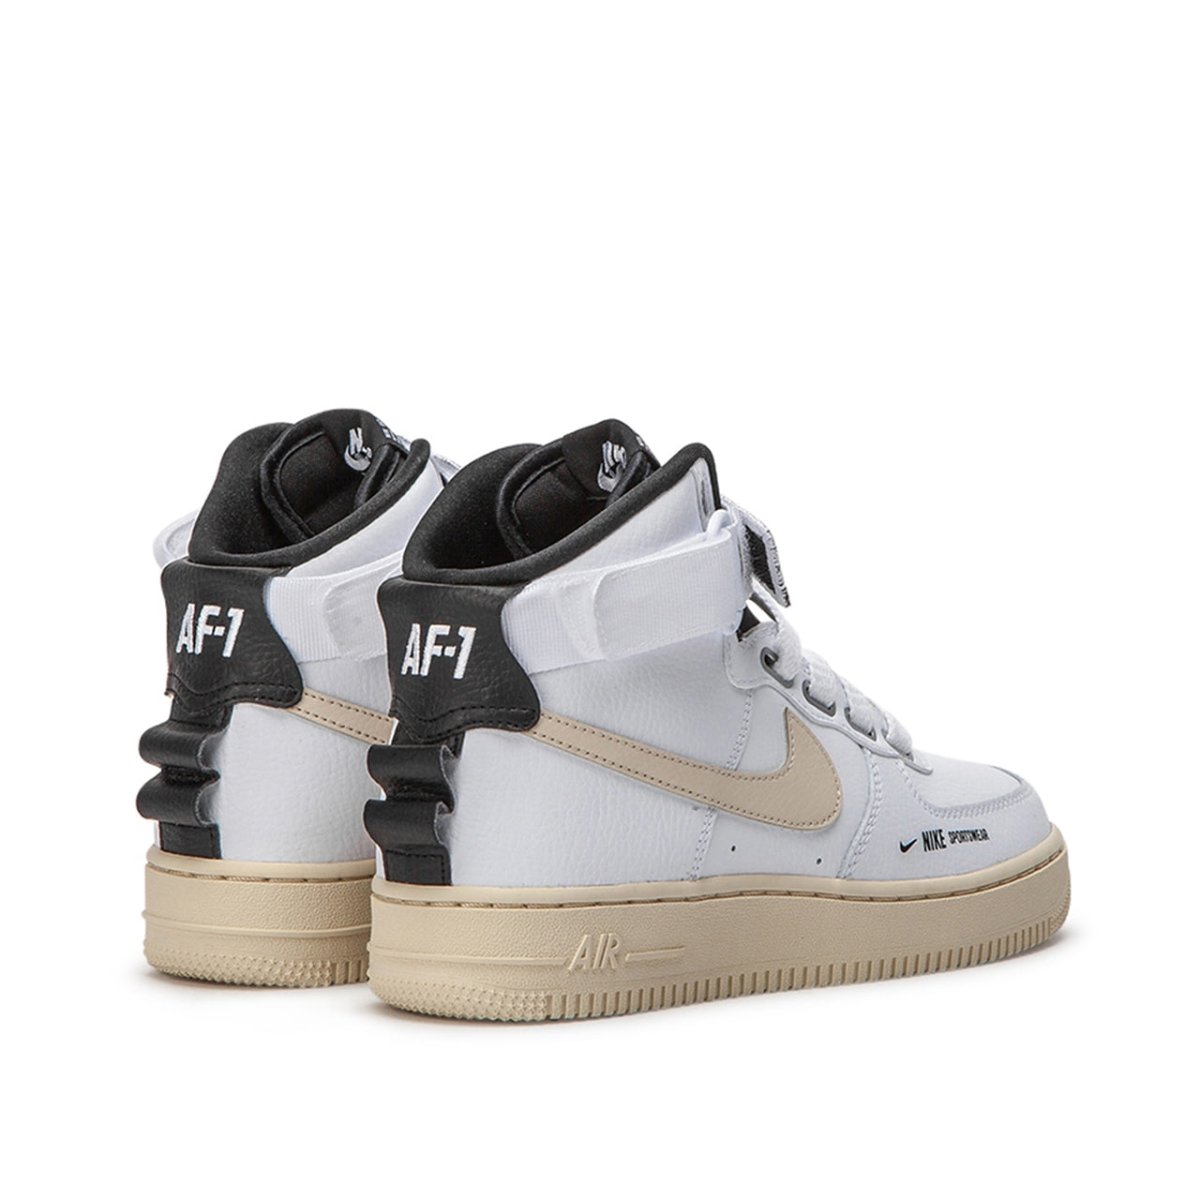 Nike Air Force 1 High Utility AJ7311-100 AJ7311-200 - Sneaker Bar